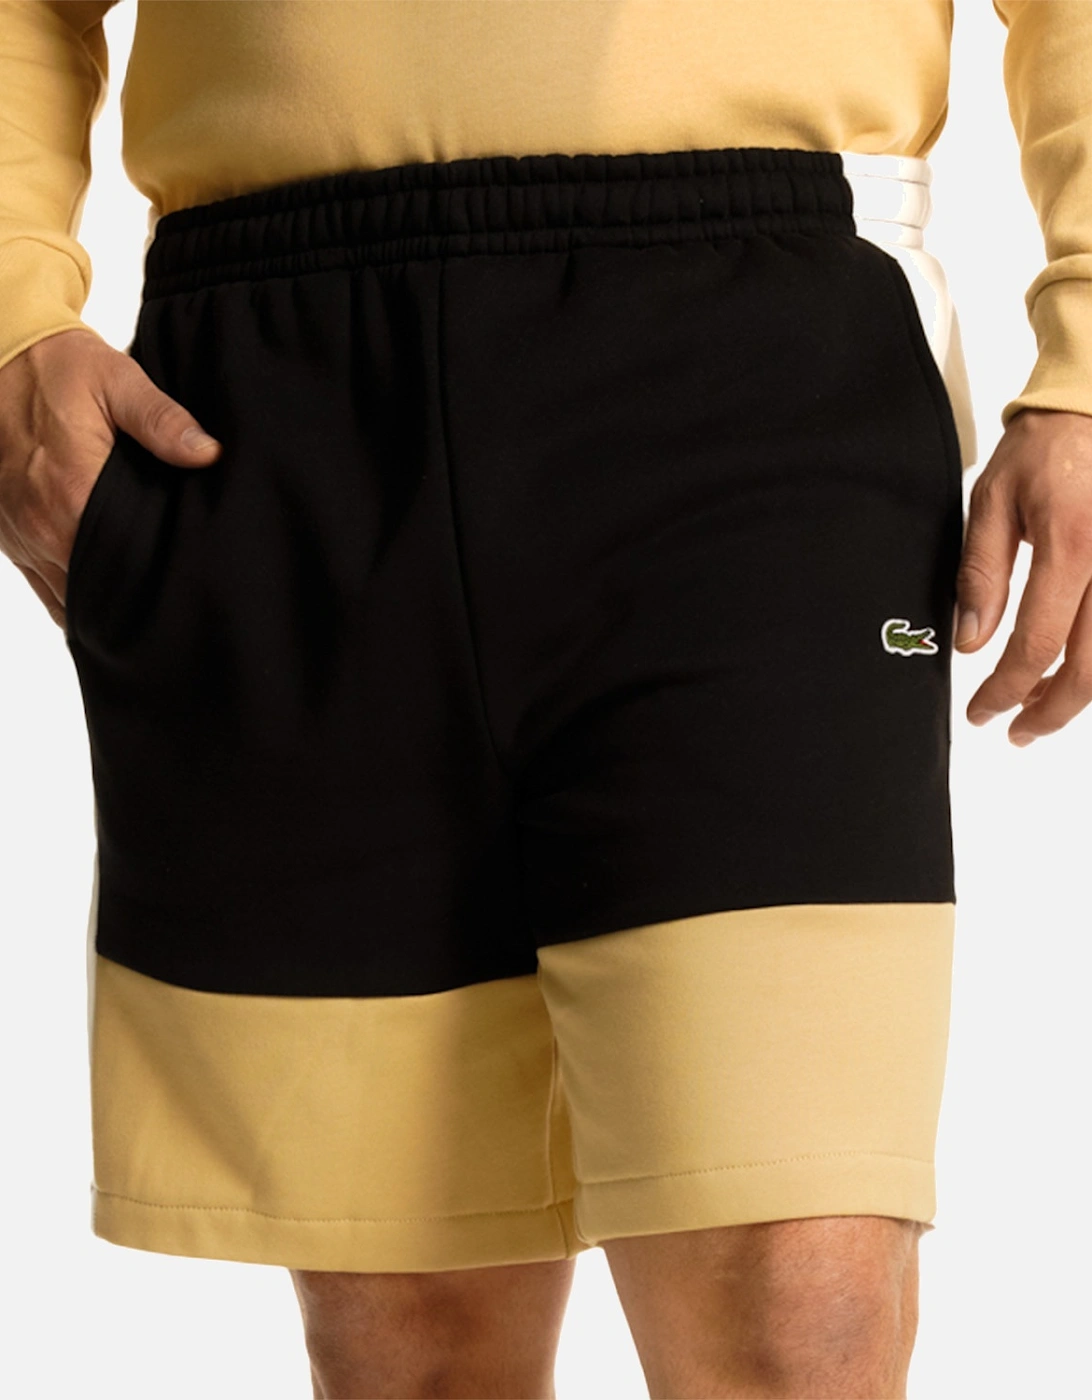 Mens Panel Fleece Shorts (Black/Beige)